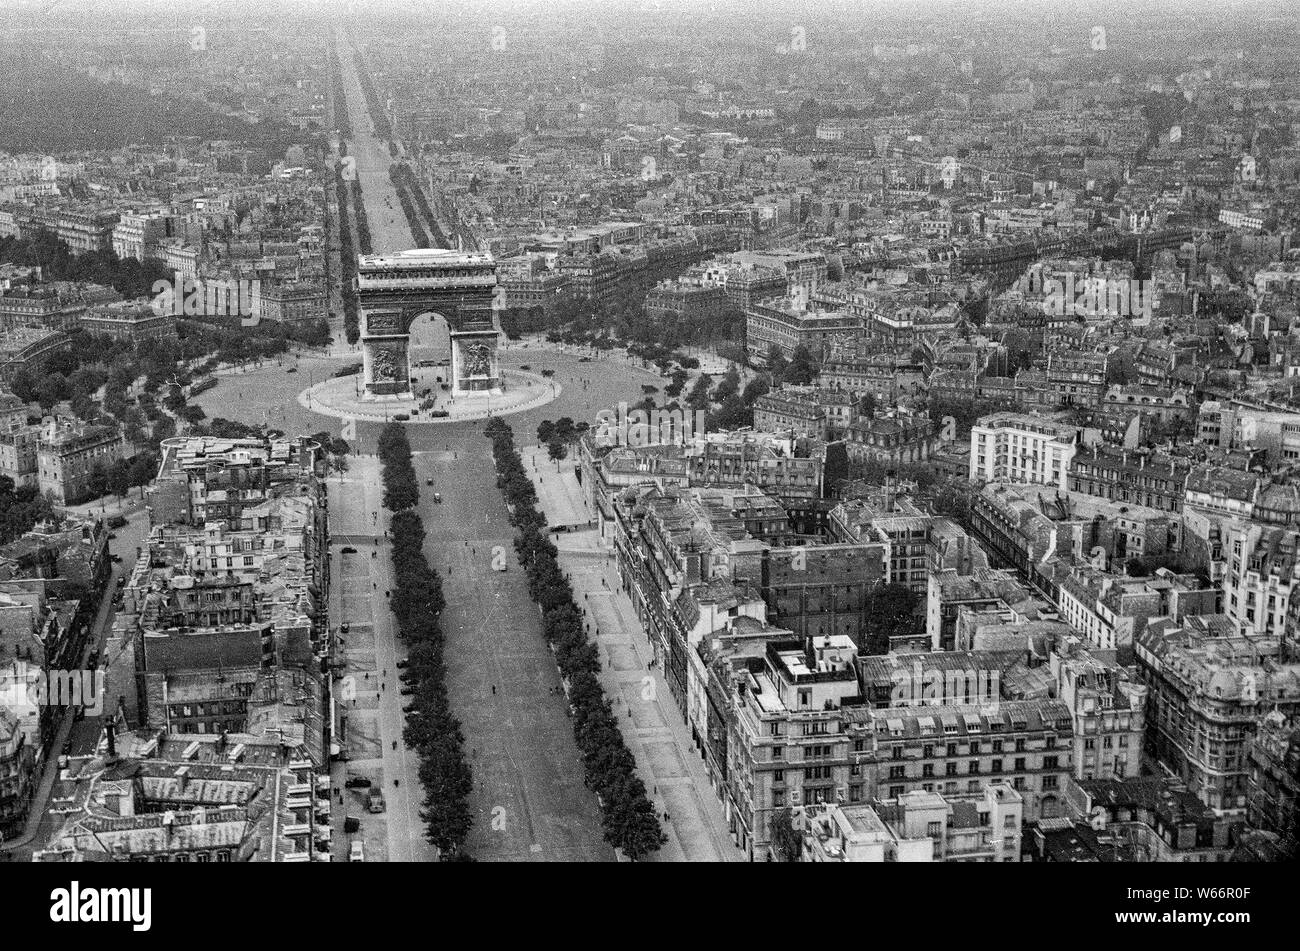 Parigi,Francia-07-12-1940 unica antenna storico di Place de lètoile e Arc de Triomphe, prese da un tedesco di ricognizione aerea fotografo durante l occupazione tedesca della Francia Foto Stock